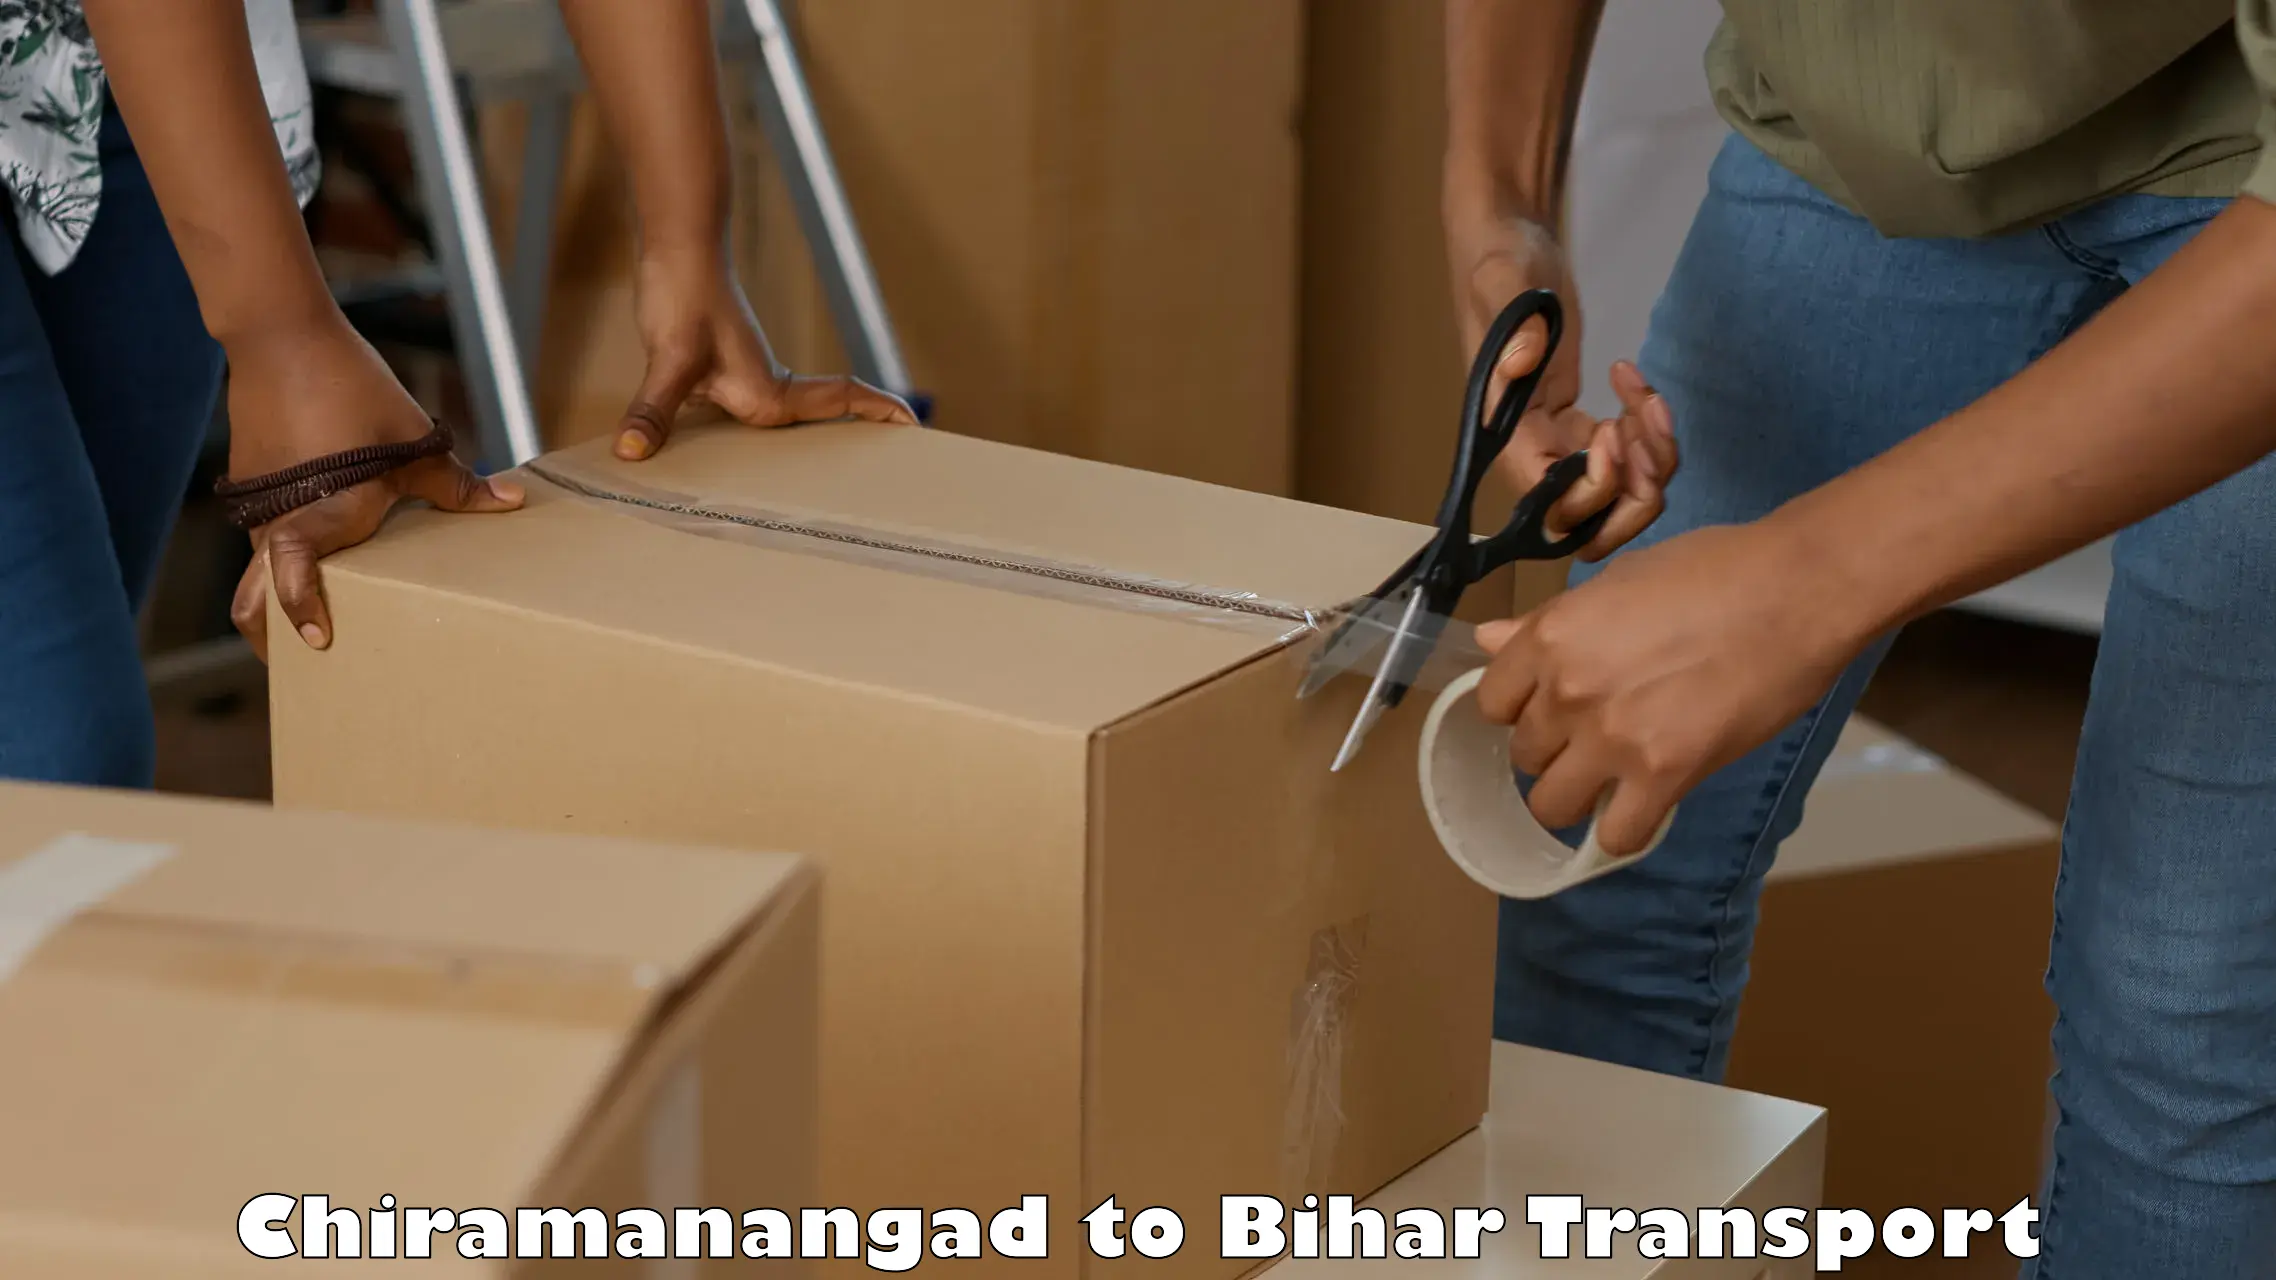 Lorry transport service Chiramanangad to Kumarkhand